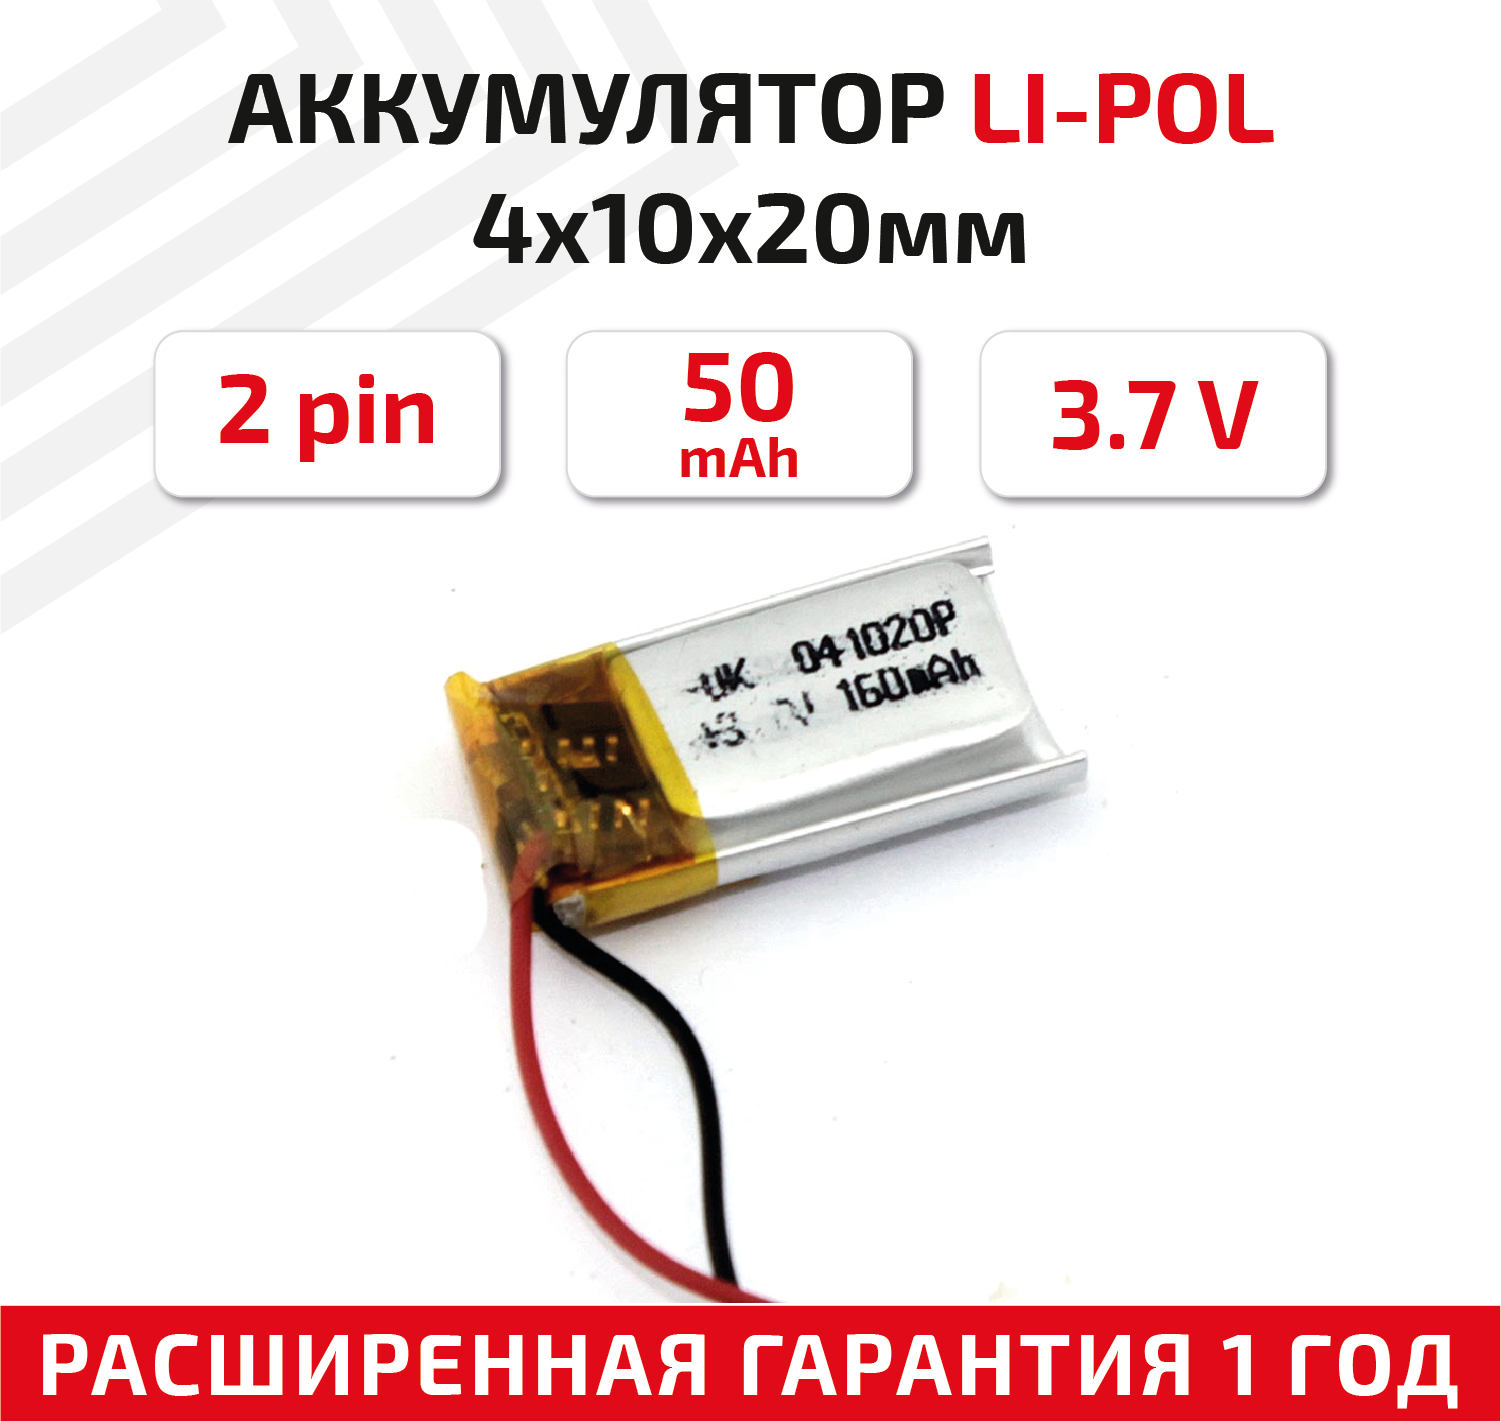 Универсальный аккумулятор (АКБ) для планшета, видеорегистратора и др, 4х10х20мм, 50мАч, 3.7В, Li-Pol, 2pin (на 2 провода)